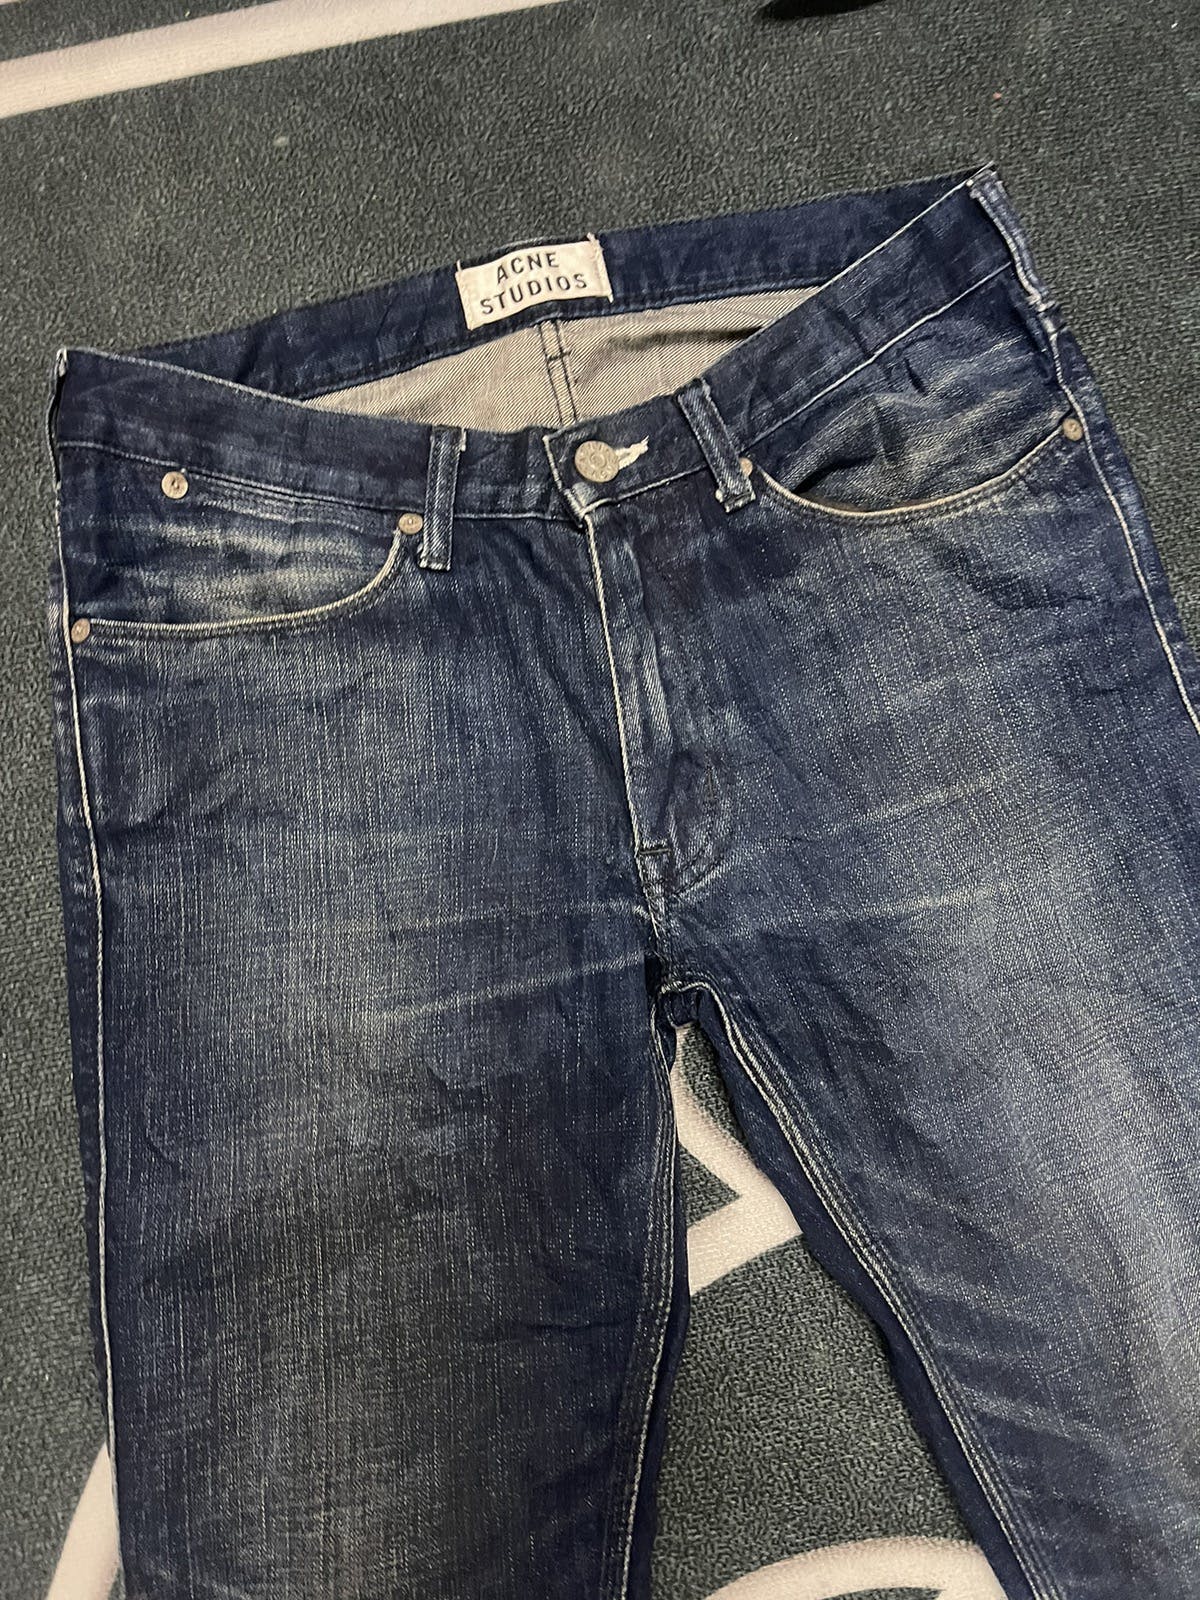 Acne studio jeans - 5